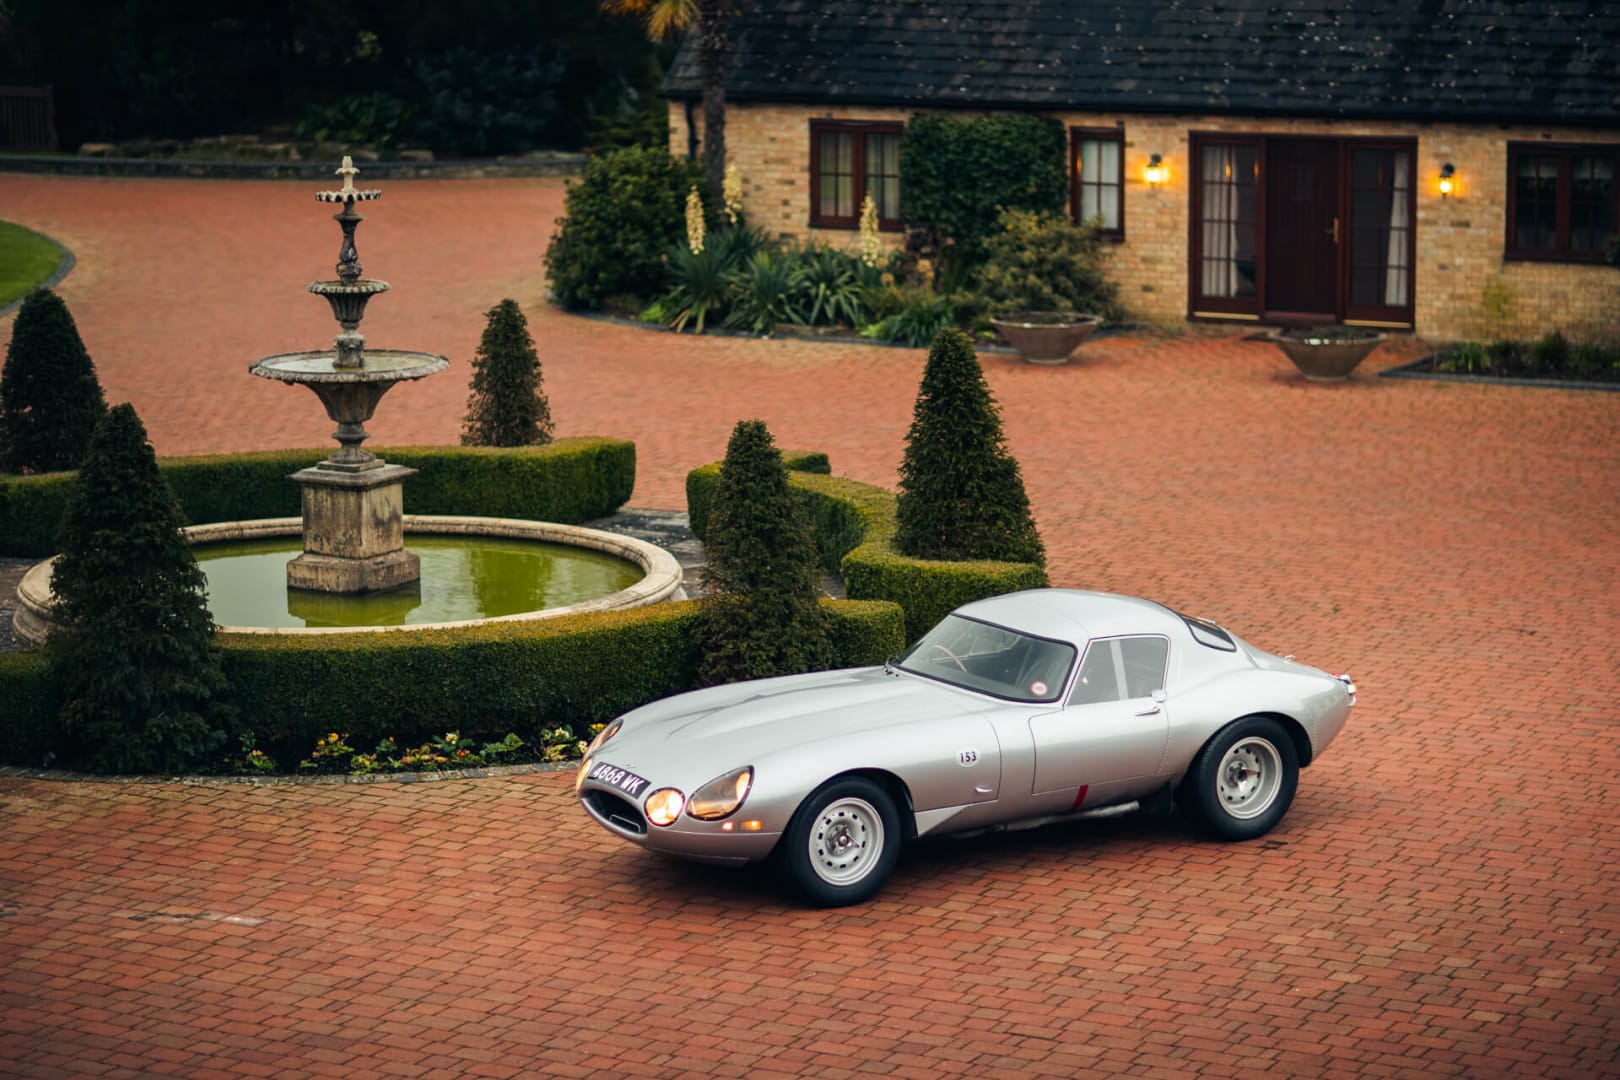 1963 Jaguar E-Type 'Low Drag' Coupé - collectorscarworld